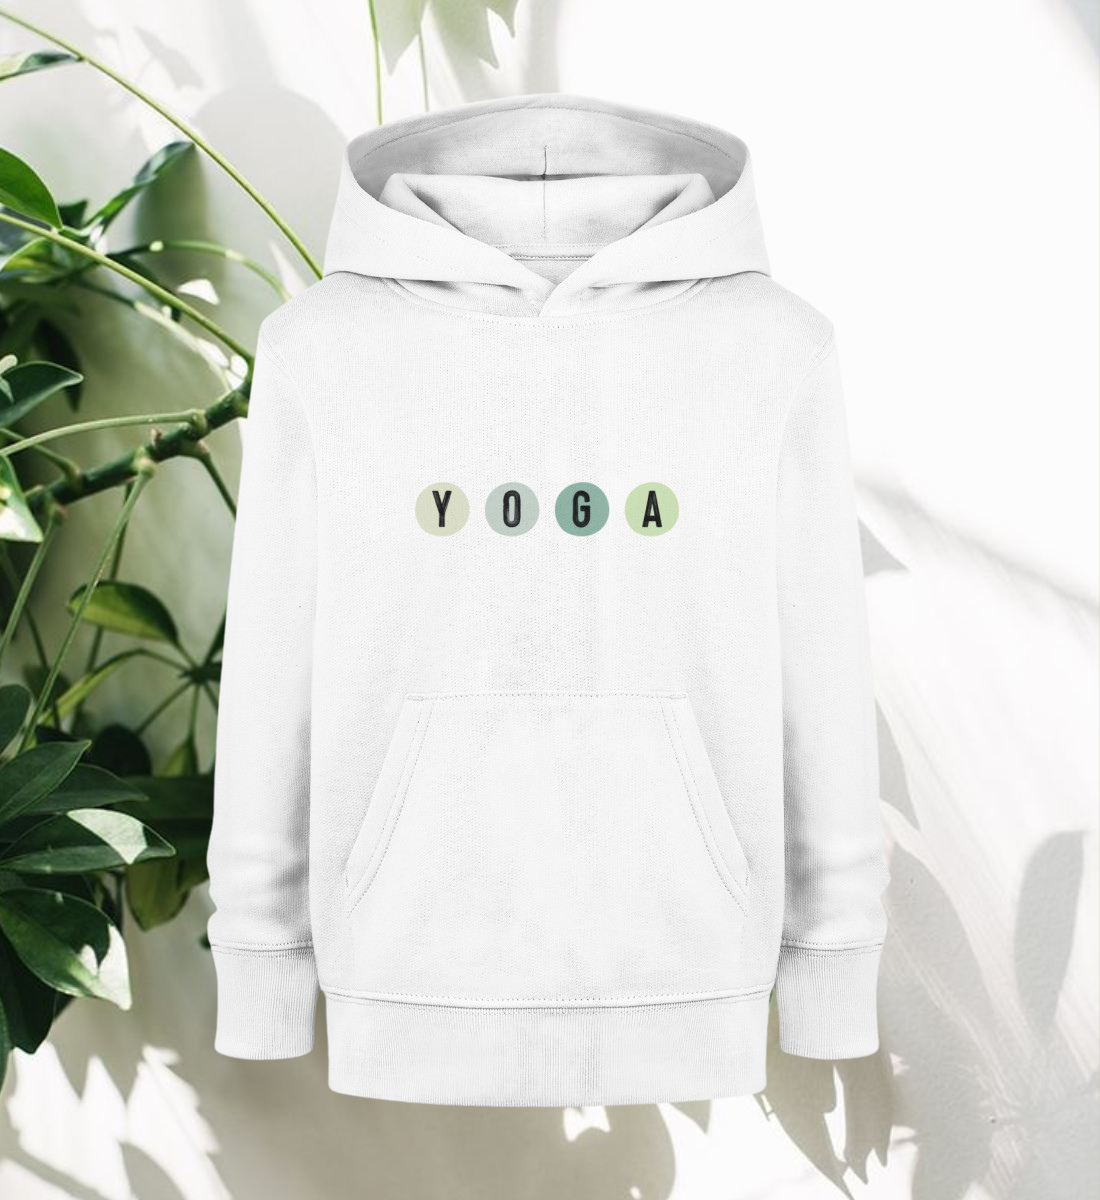 yoga l hoodie bio-baumwolle weiß l kinder hoodie l schöne yoga kleidung l nachhaltig im alltag dank veganer mode